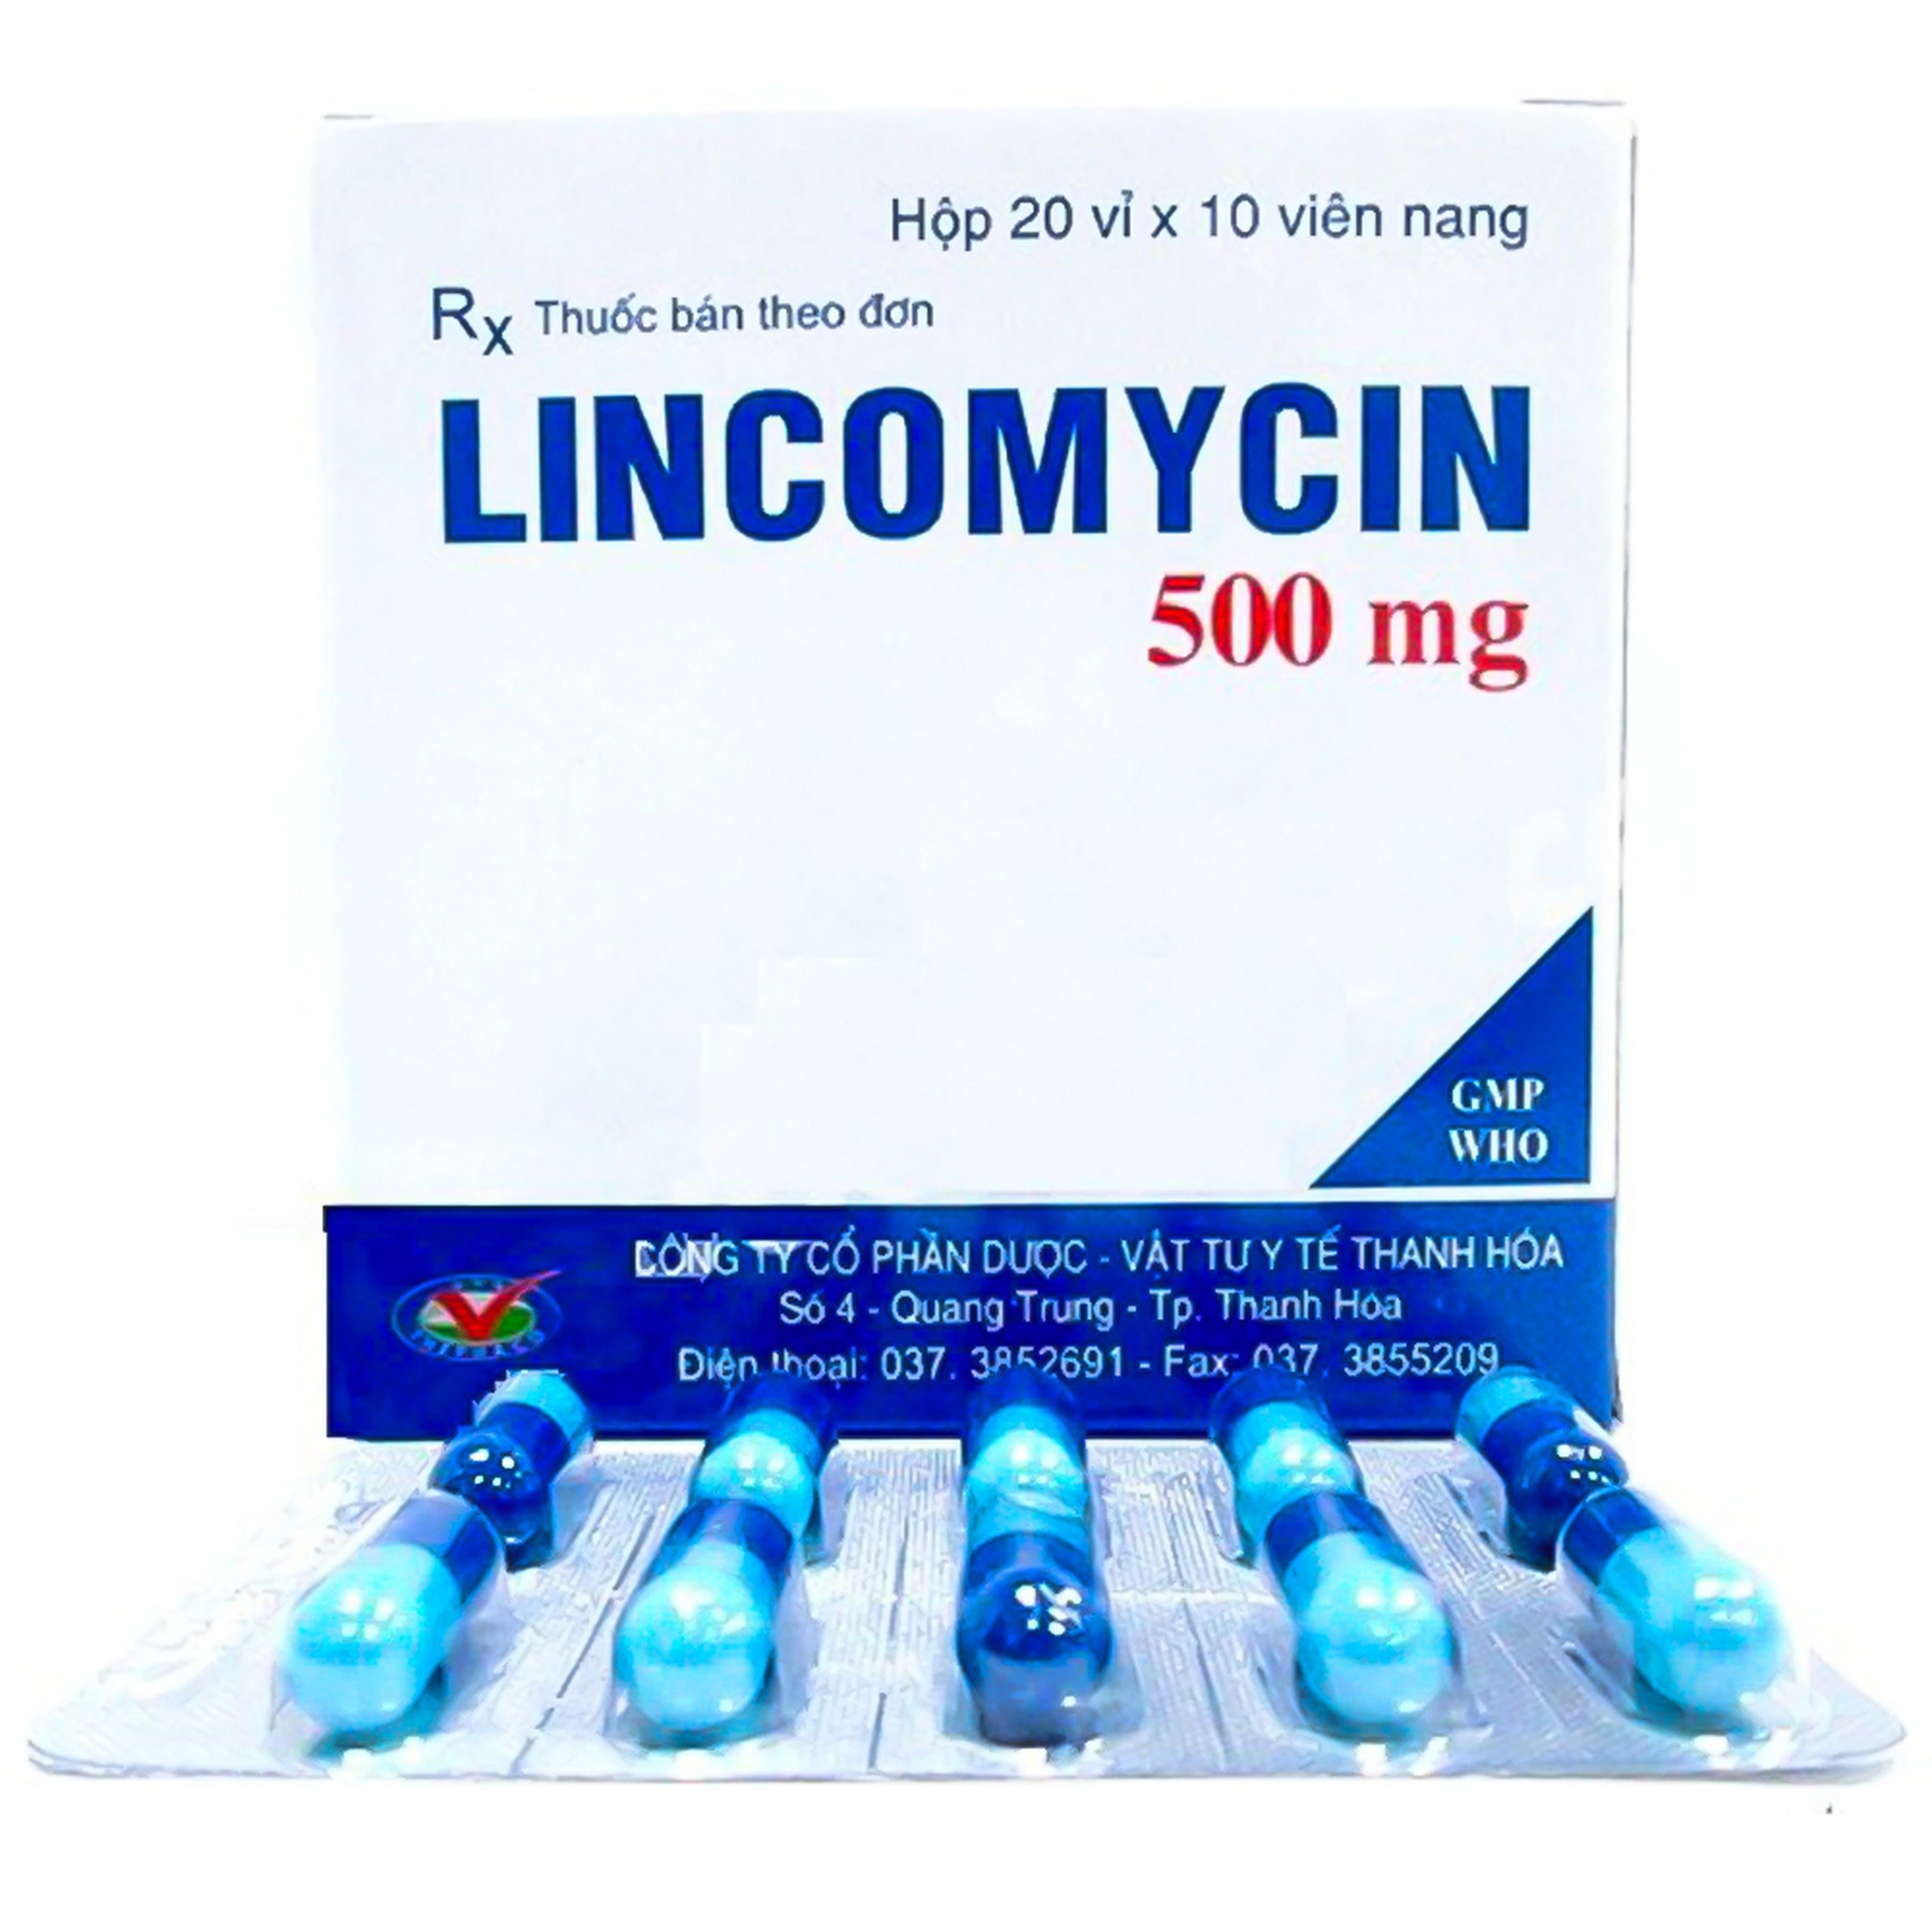 Thuốc Lincomycin 500mg Thephaco điều trị các chứng nhiễm khuẩn (20 vỉ x 10 viên)